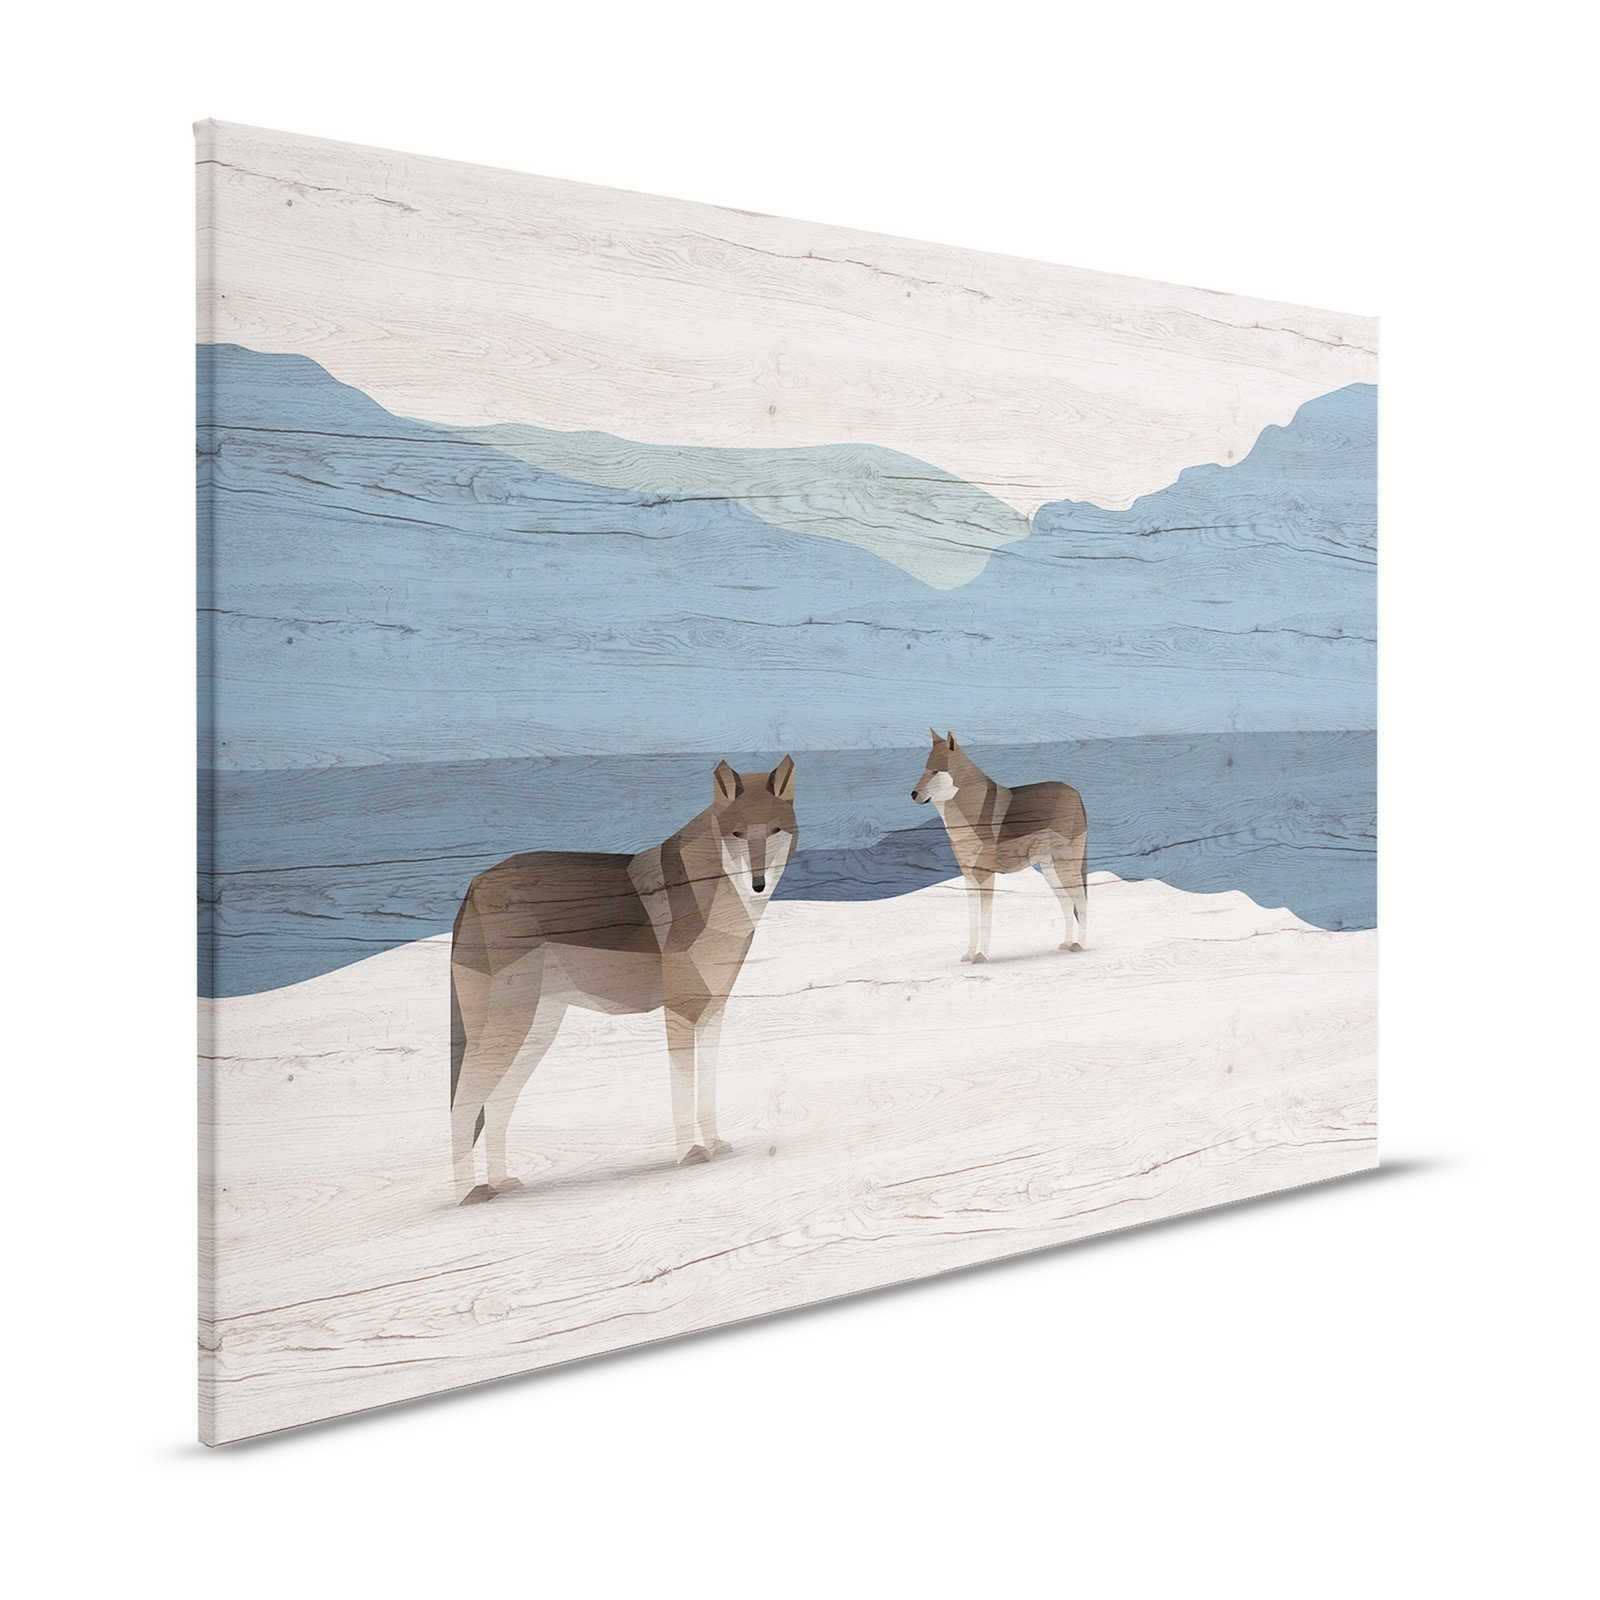 Yukon 1 - Cuadro en lienzo Montañas y perros con textura de madera - 1,20 m x 0,80 m
